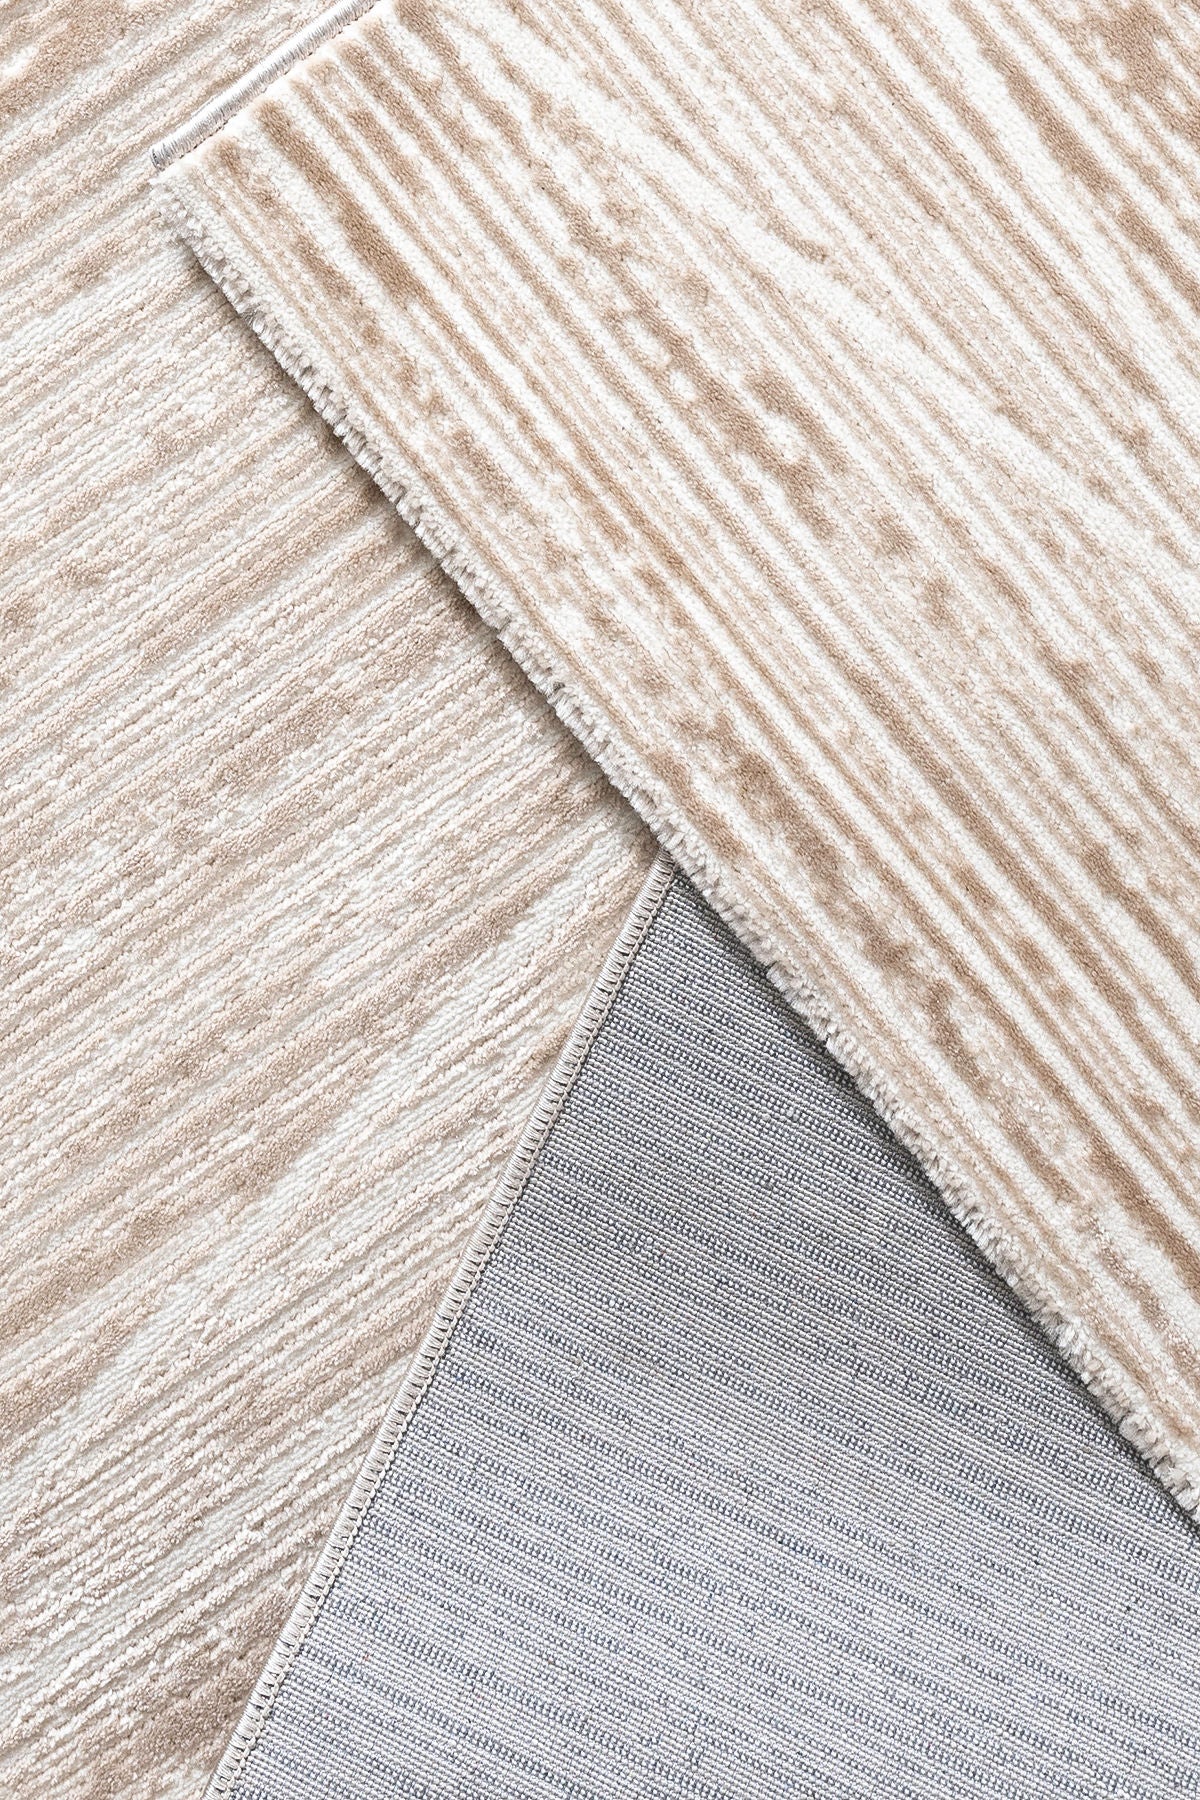 Moda 1510 - Beige - Carpet (160 x 230)